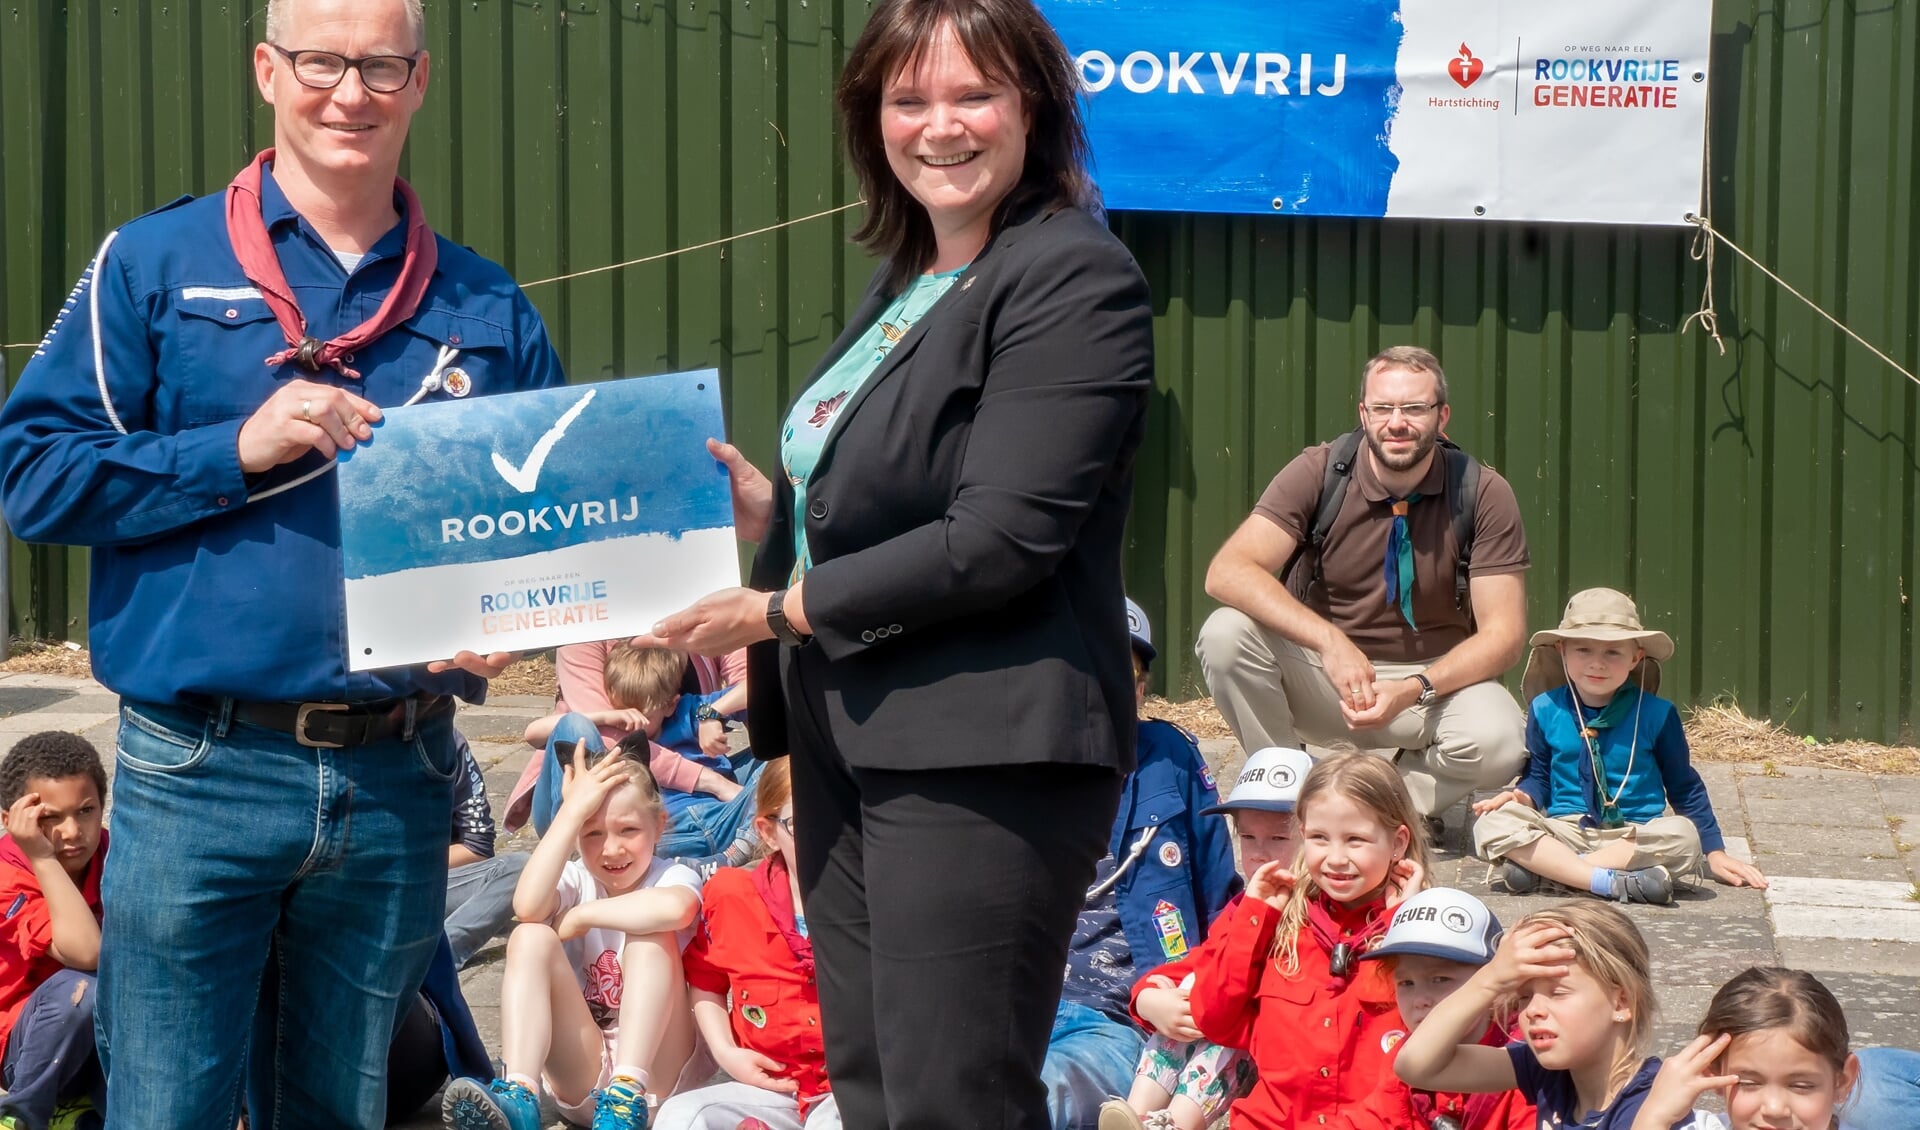 Wethouder Angelique Beekhuizen overhandigt het bord ‘Rookvrij’ aan voorzitter Bas van den Berg van de scoutingvereniging.